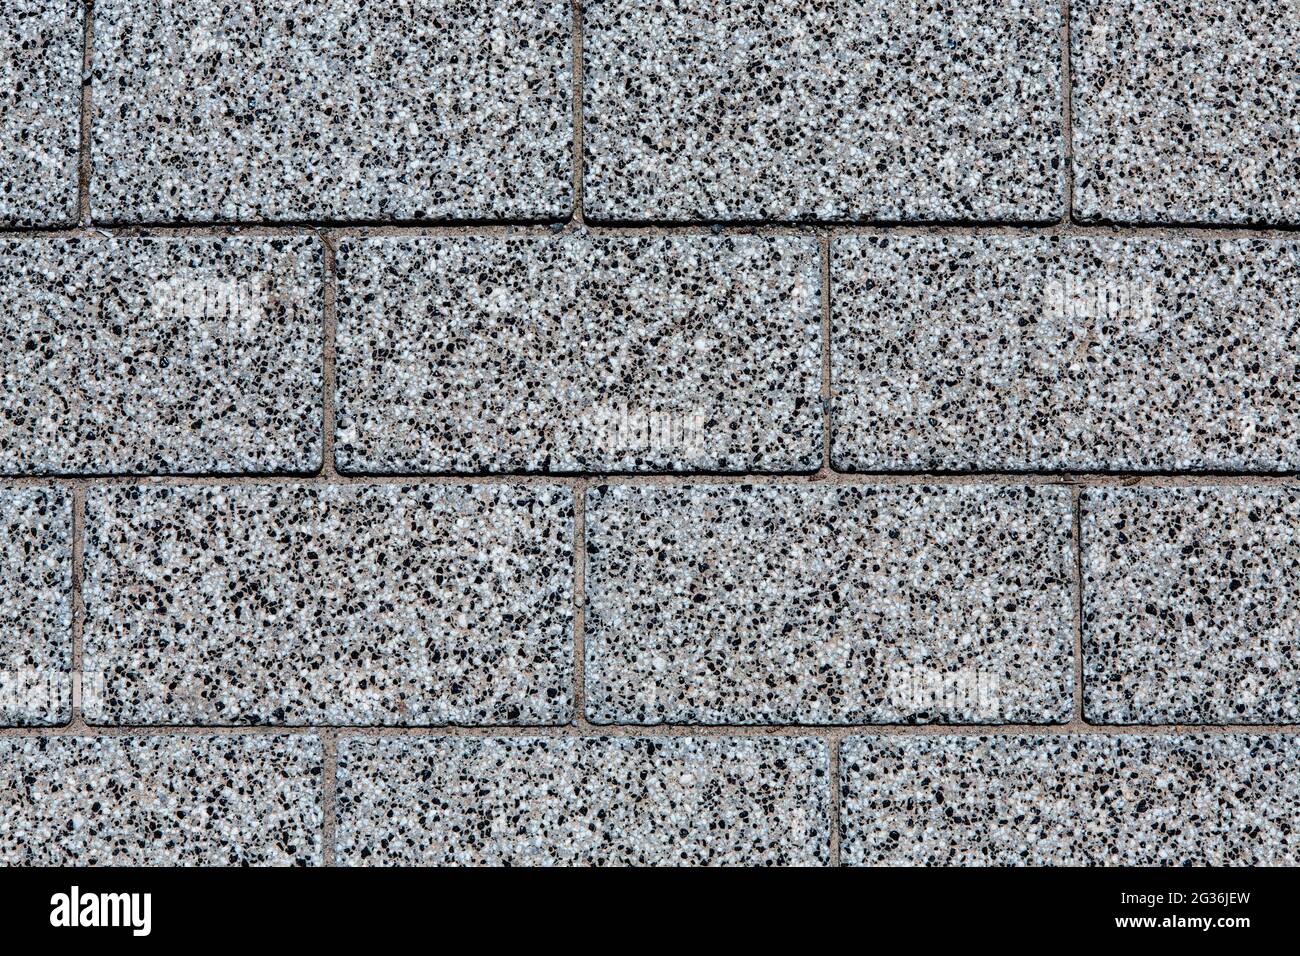 photo en gros plan de sol carrelé avec texture tachetée blanche, noire et grise, placée horizontalement, fonds ou textures de concept Banque D'Images